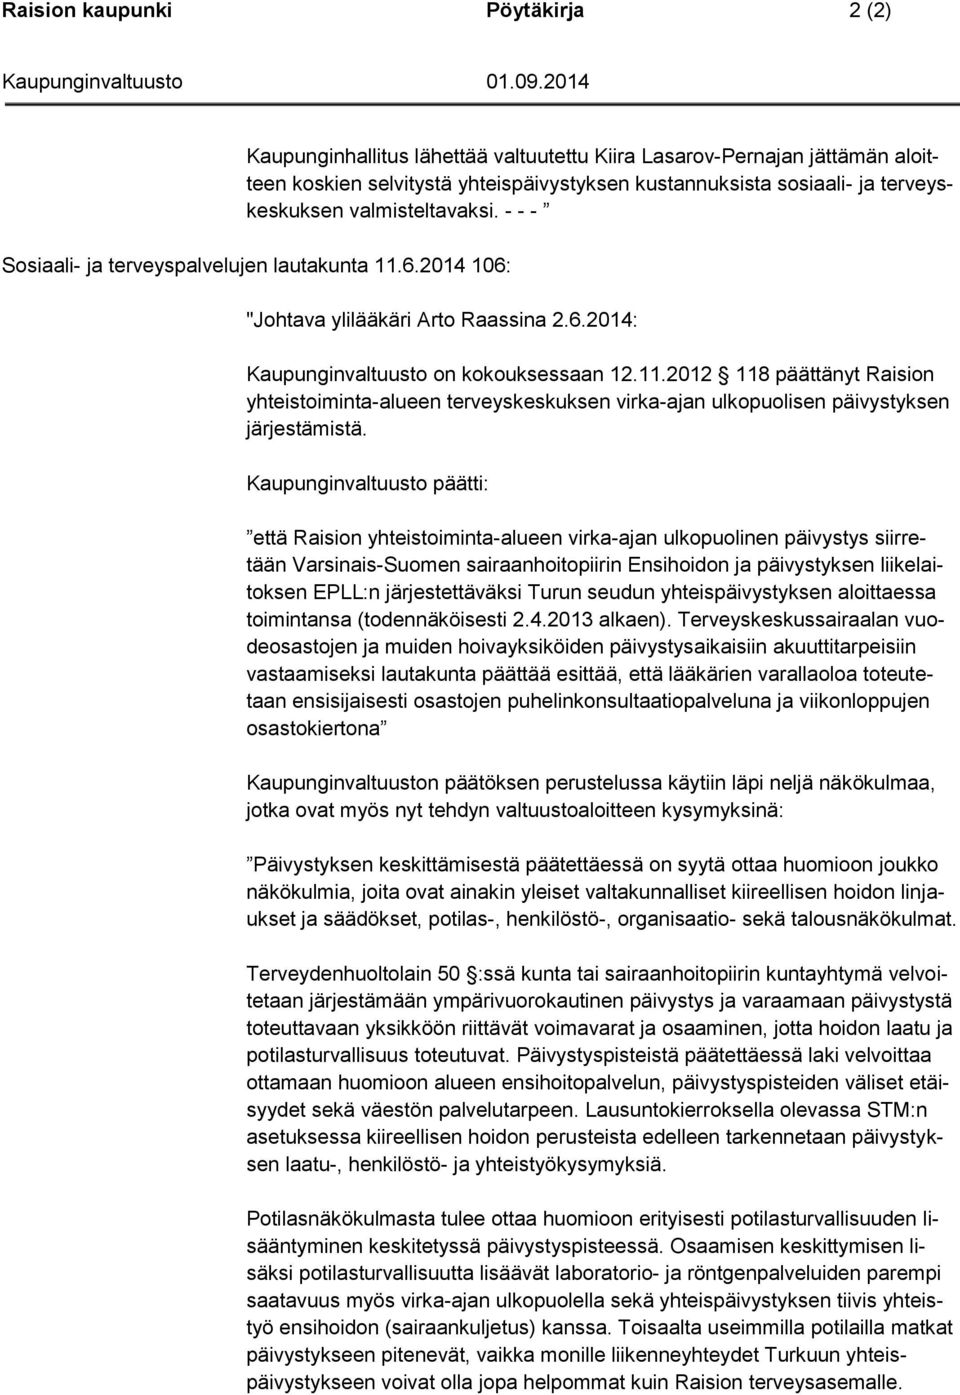 Kaupunginvaltuusto päätti: että Raision yhteistoiminta-alueen virka-ajan ulkopuolinen päivystys siirretään Varsinais-Suomen sairaanhoitopiirin Ensihoidon ja päivystyksen liikelaitoksen EPLL:n